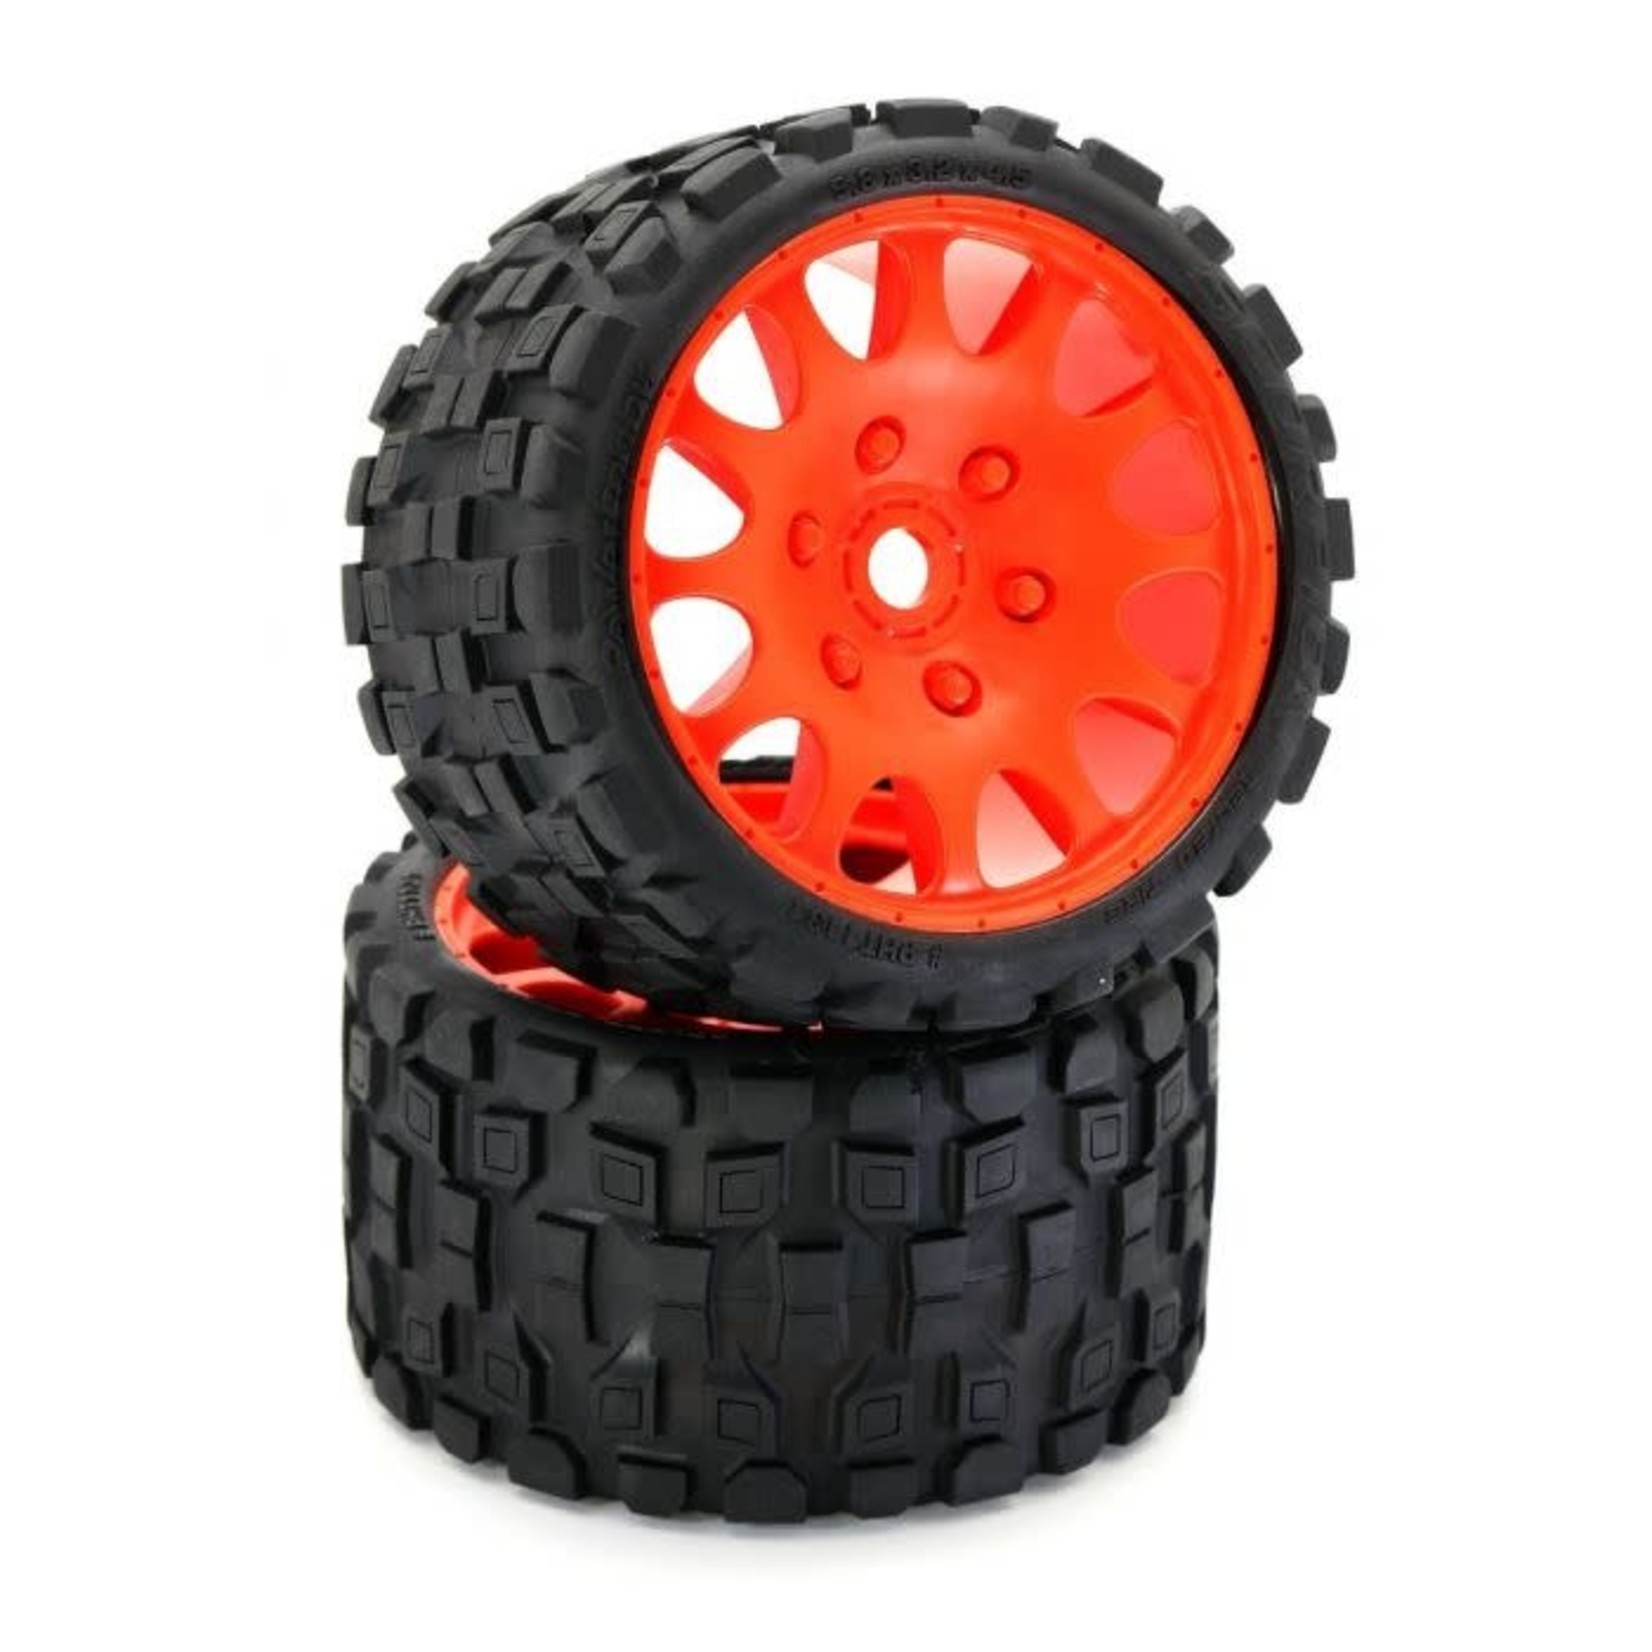 Power Hobby Power Hobby Scorpion Belted Monster Truck Tires/Wheels w/ 17mm Hex (2) Sport-Orange #PHBPHT1131SORANGE